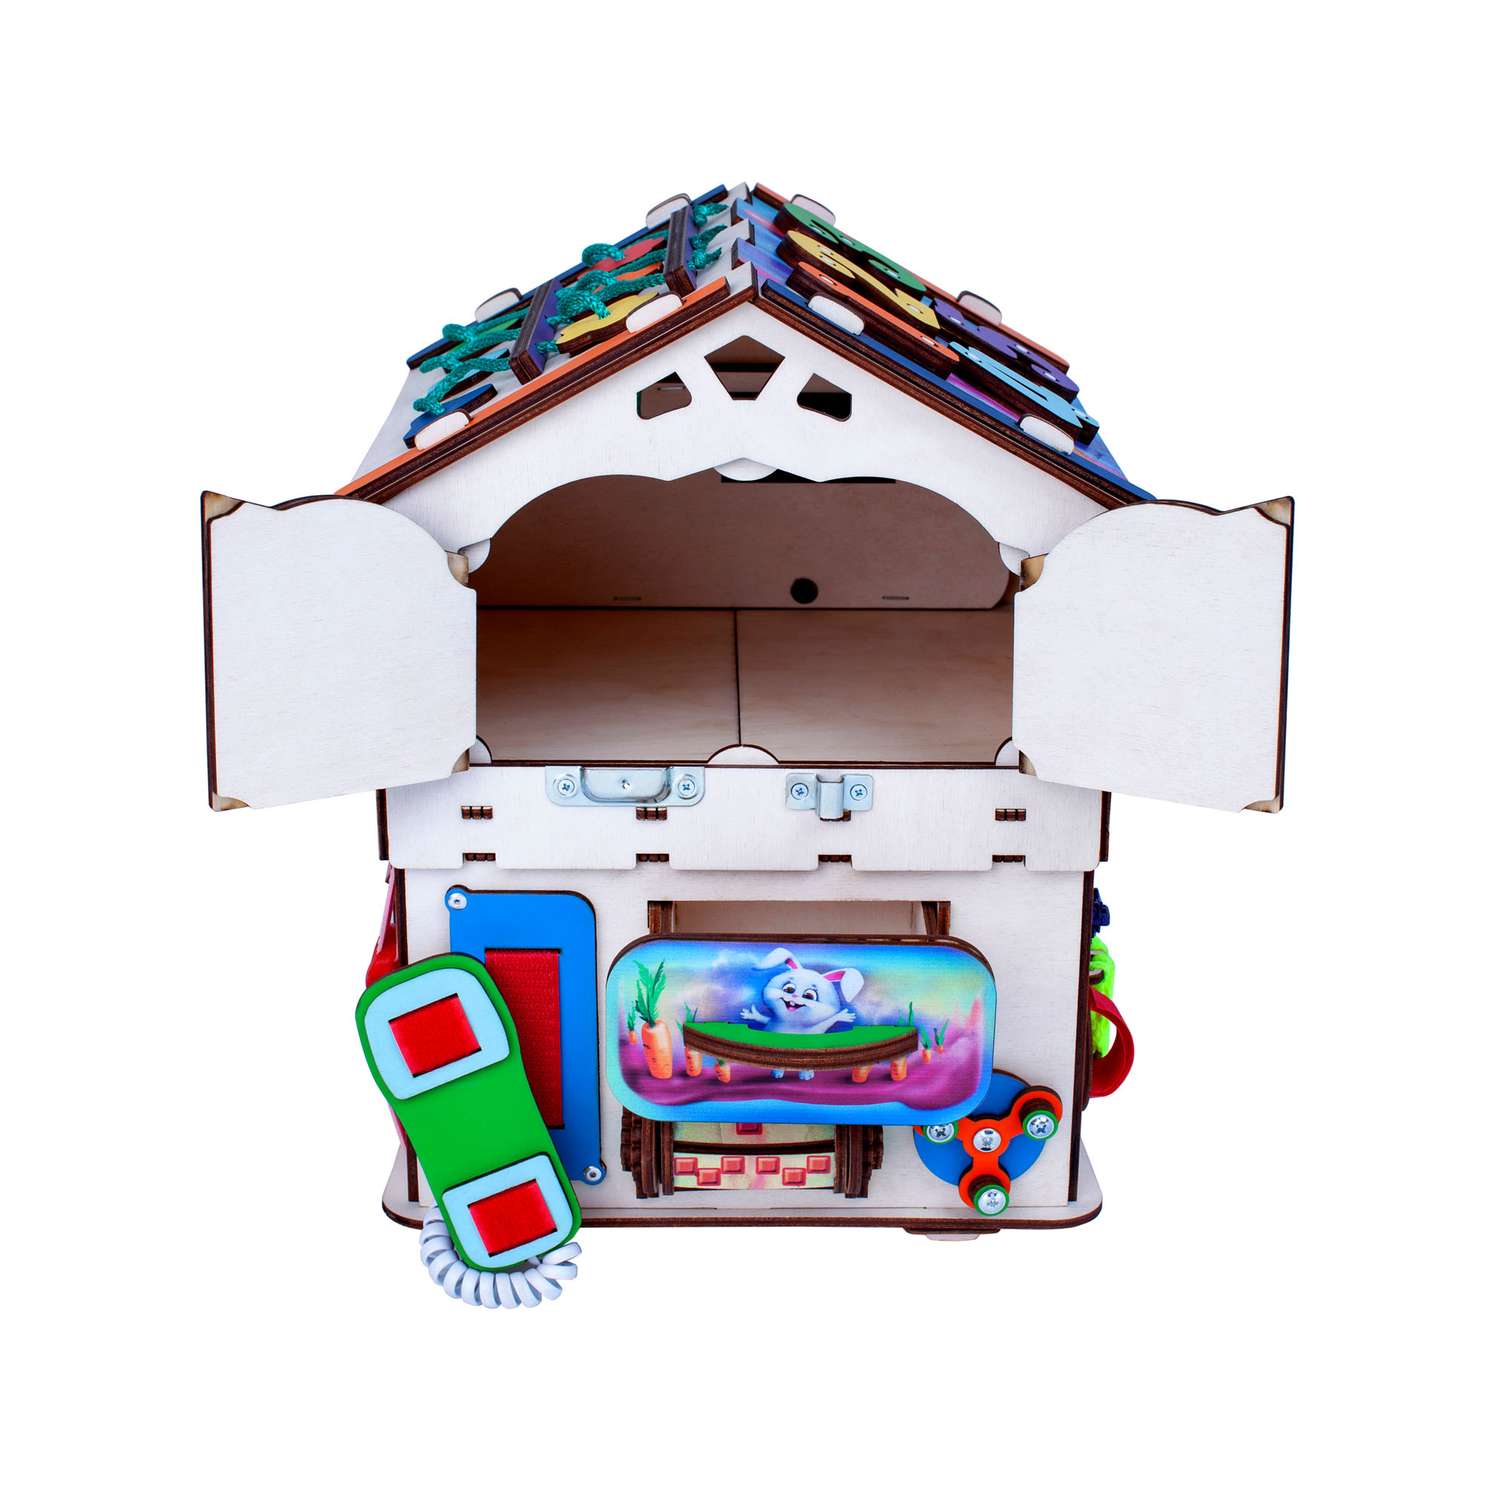 Бизиборд Jolly Kids развивающий бизидом и куб 2 в 1 со светом - фото 10